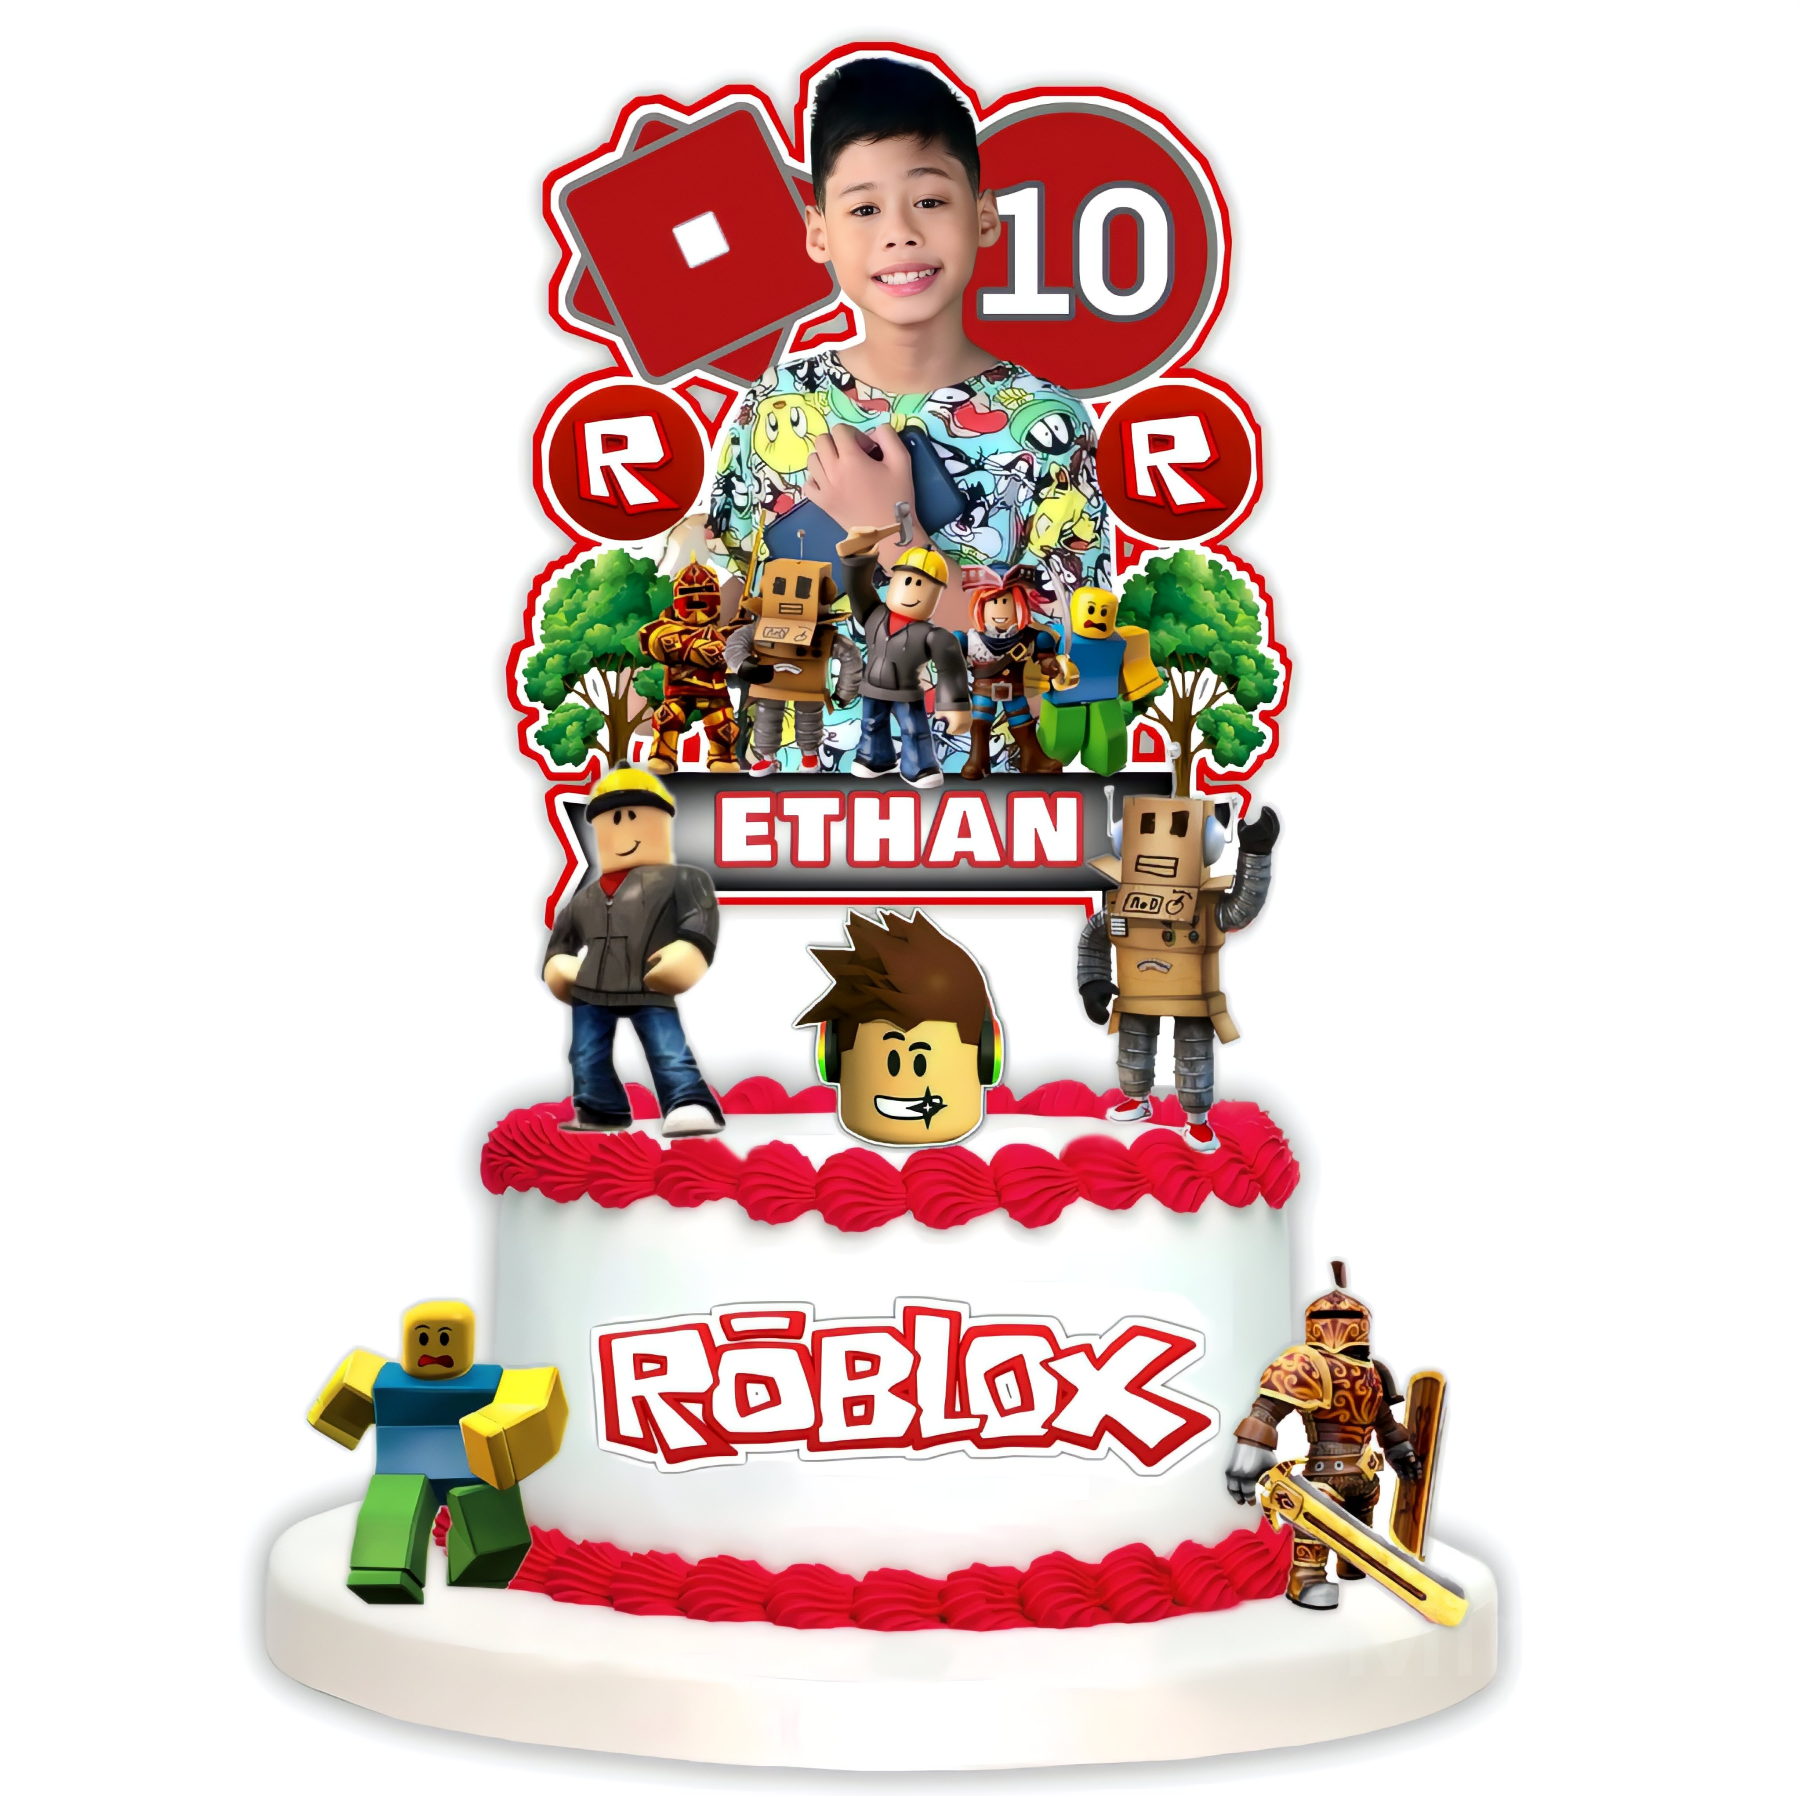 Roblox cake topper